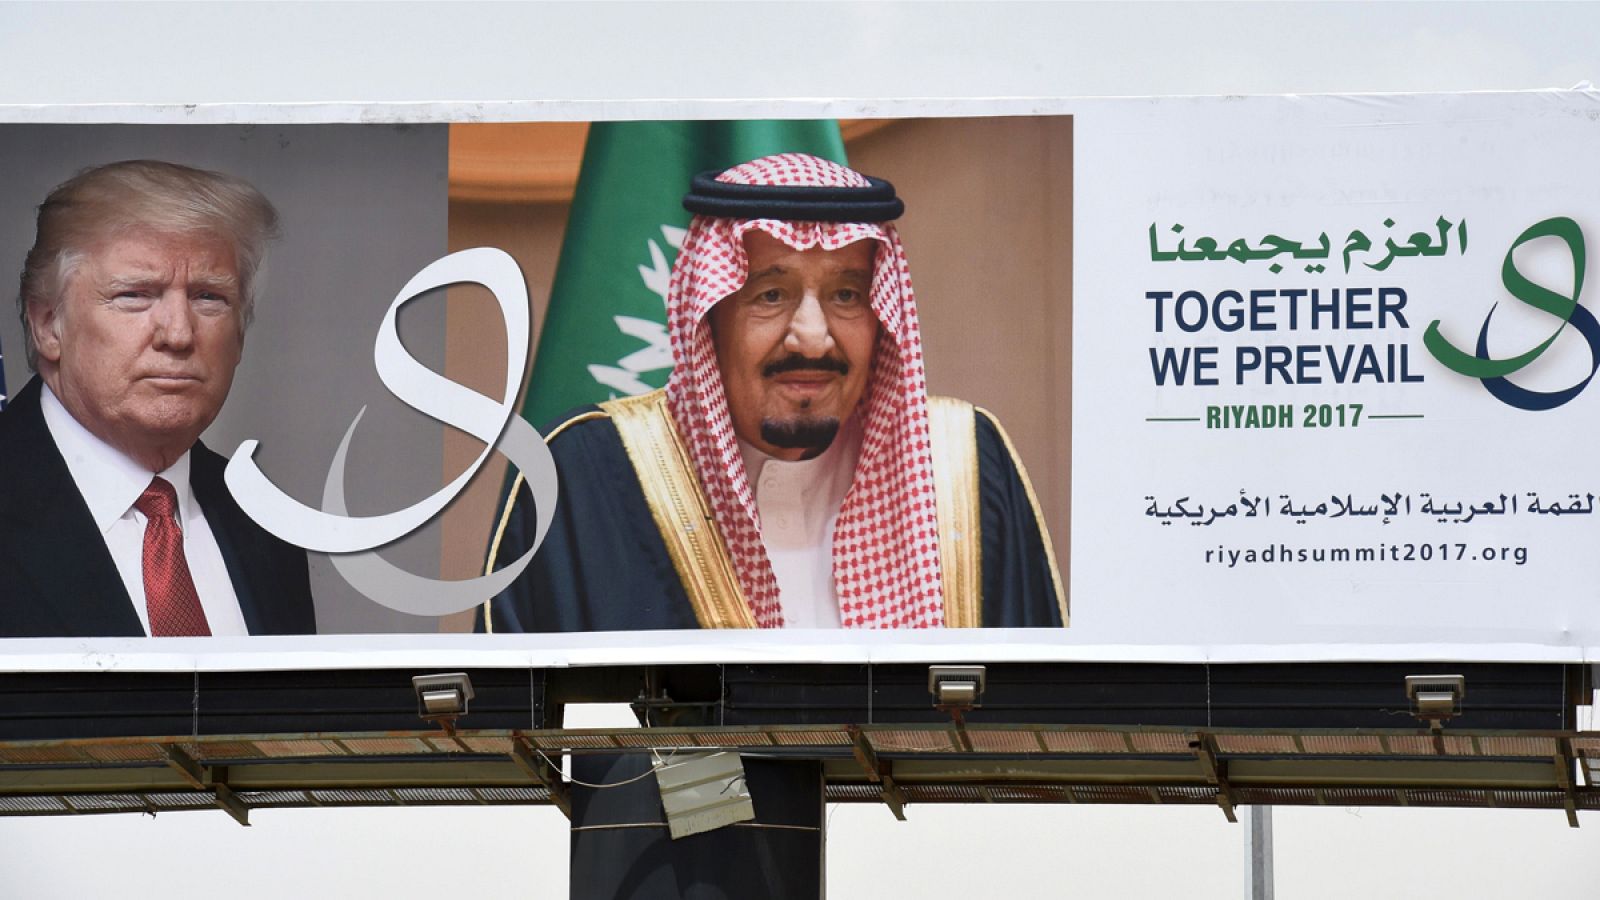 Cartel que anuncia la reunión que tendrán el presidente estadounidense Donald Trump y el rey de Arabia Saudí Salman en Rihad.